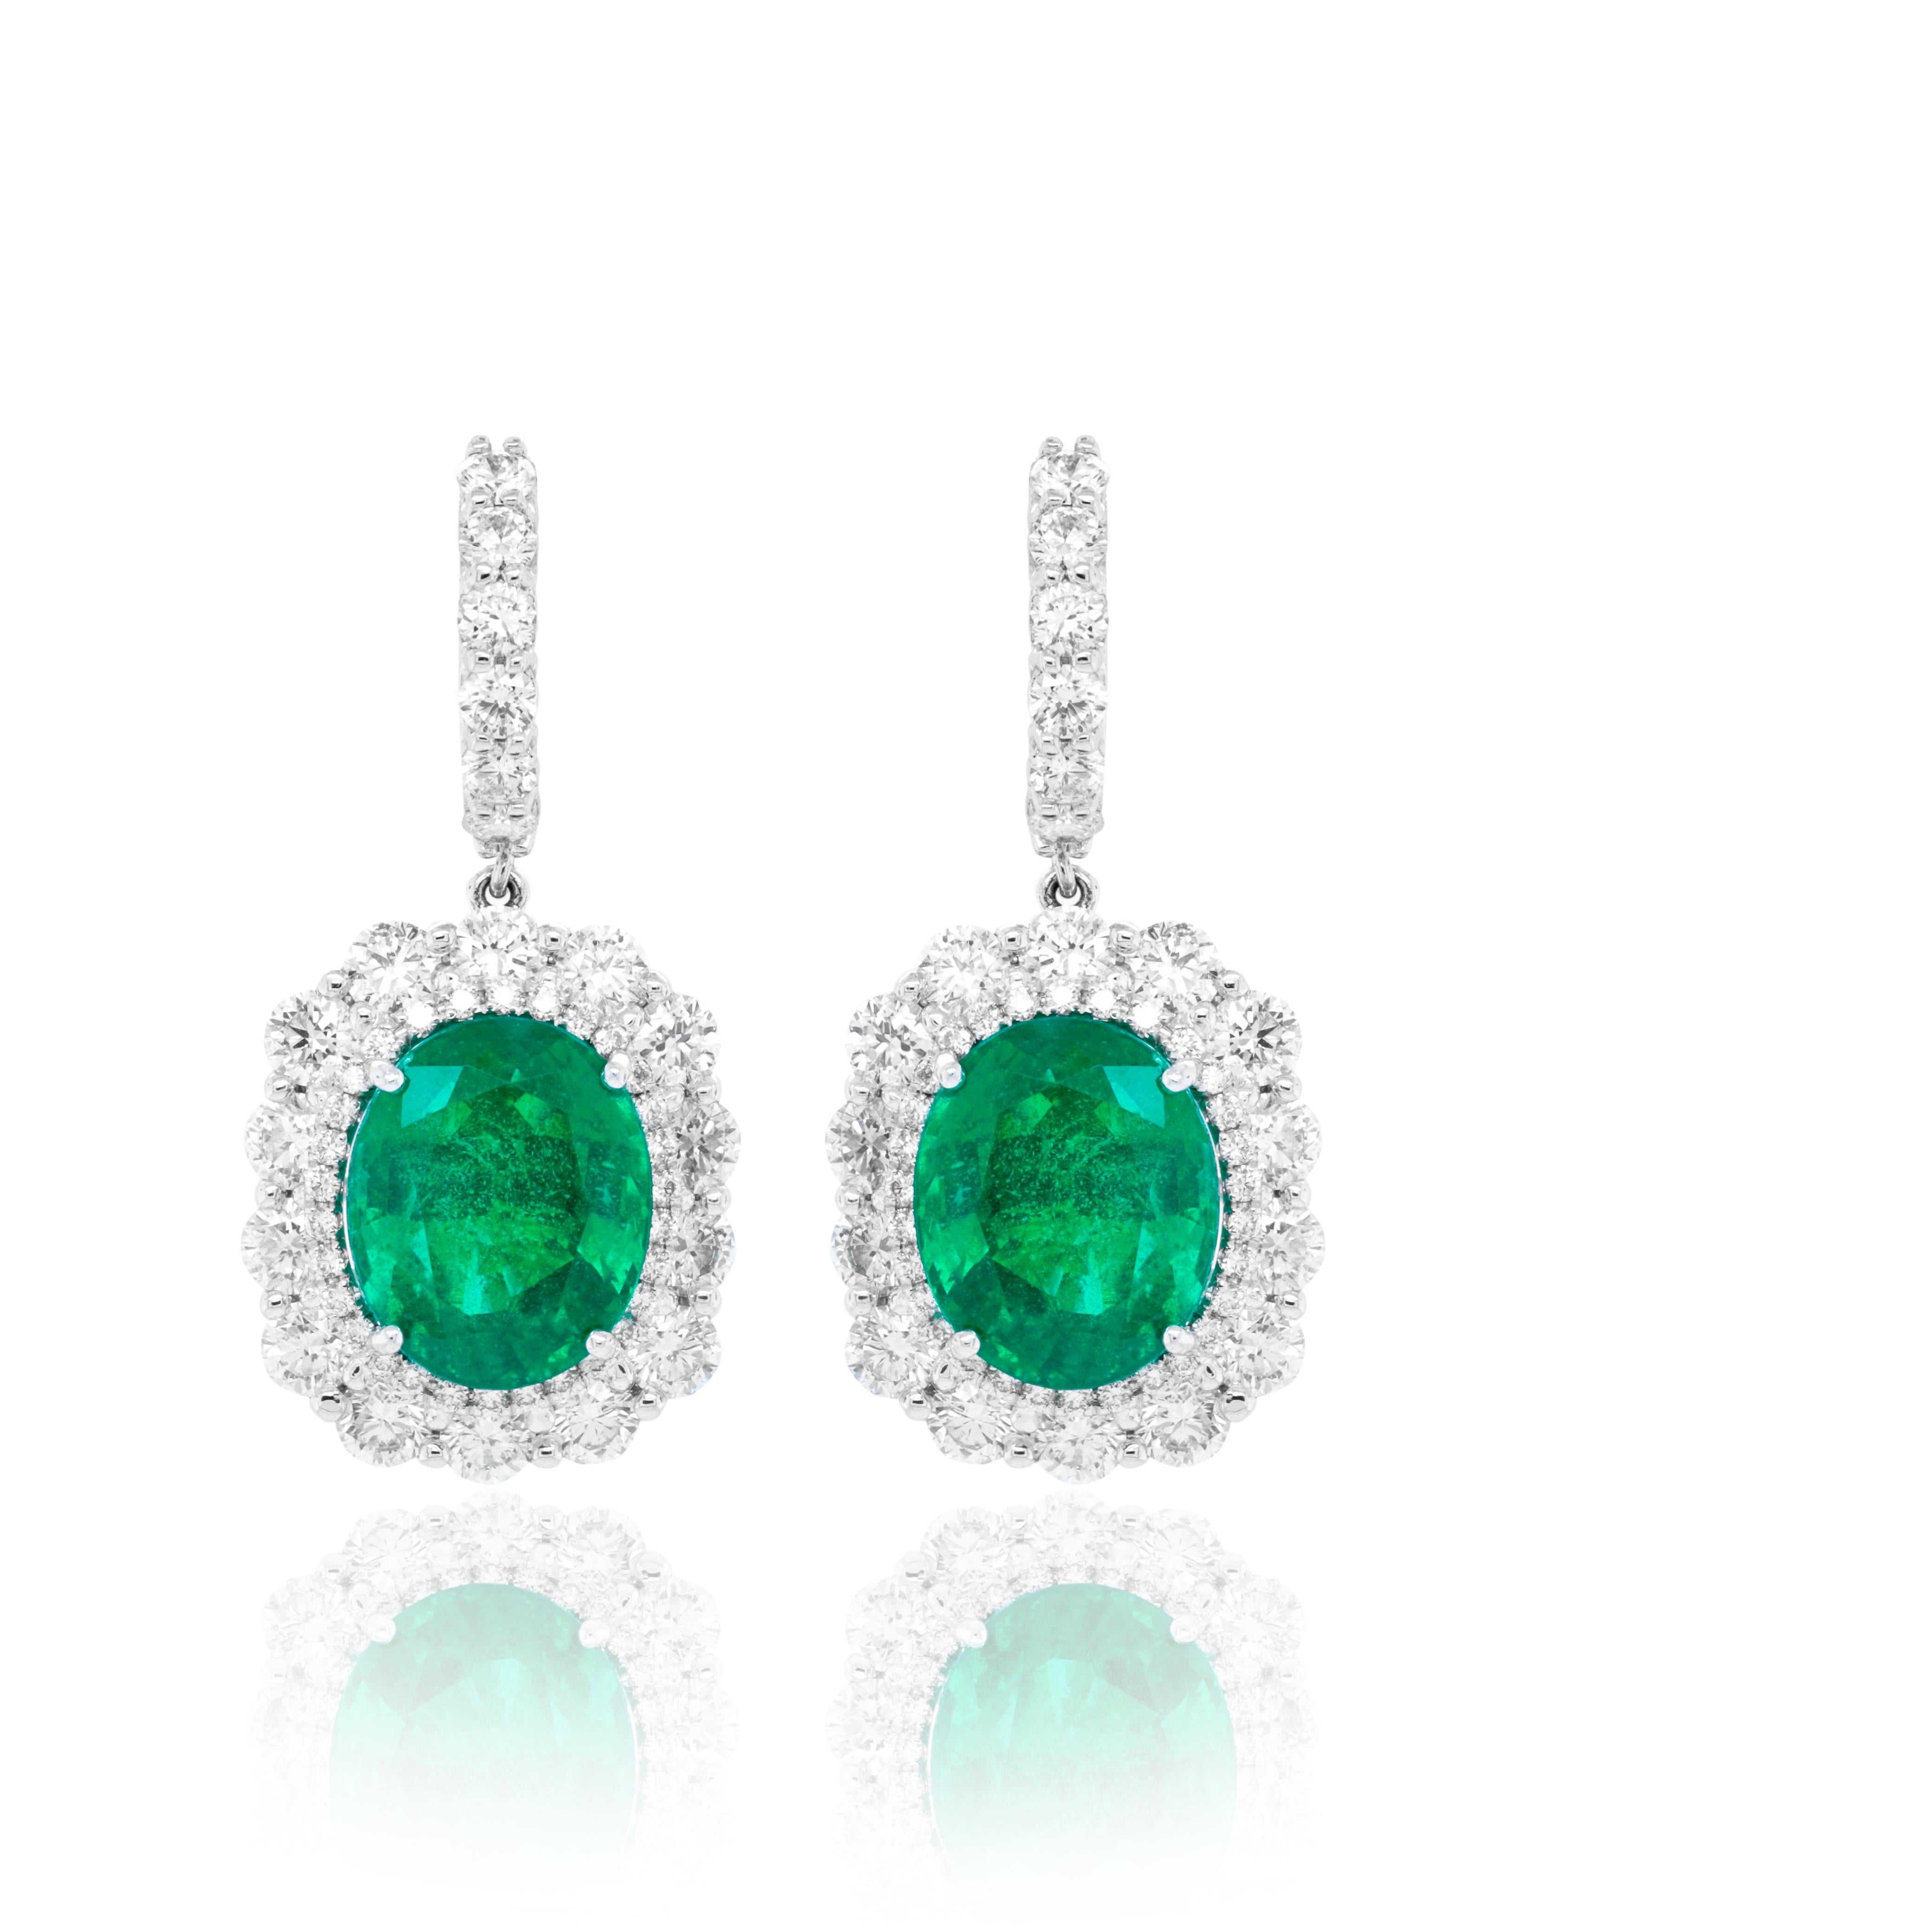 18kt Weißgold Smaragd & Diamant-Ohrringe mit 12,98 Karat GIA-zertifizierten ovalen grünen Smaragden mit 6,00 Karat runden weißen Diamanten, die rundherum gefasst sind
